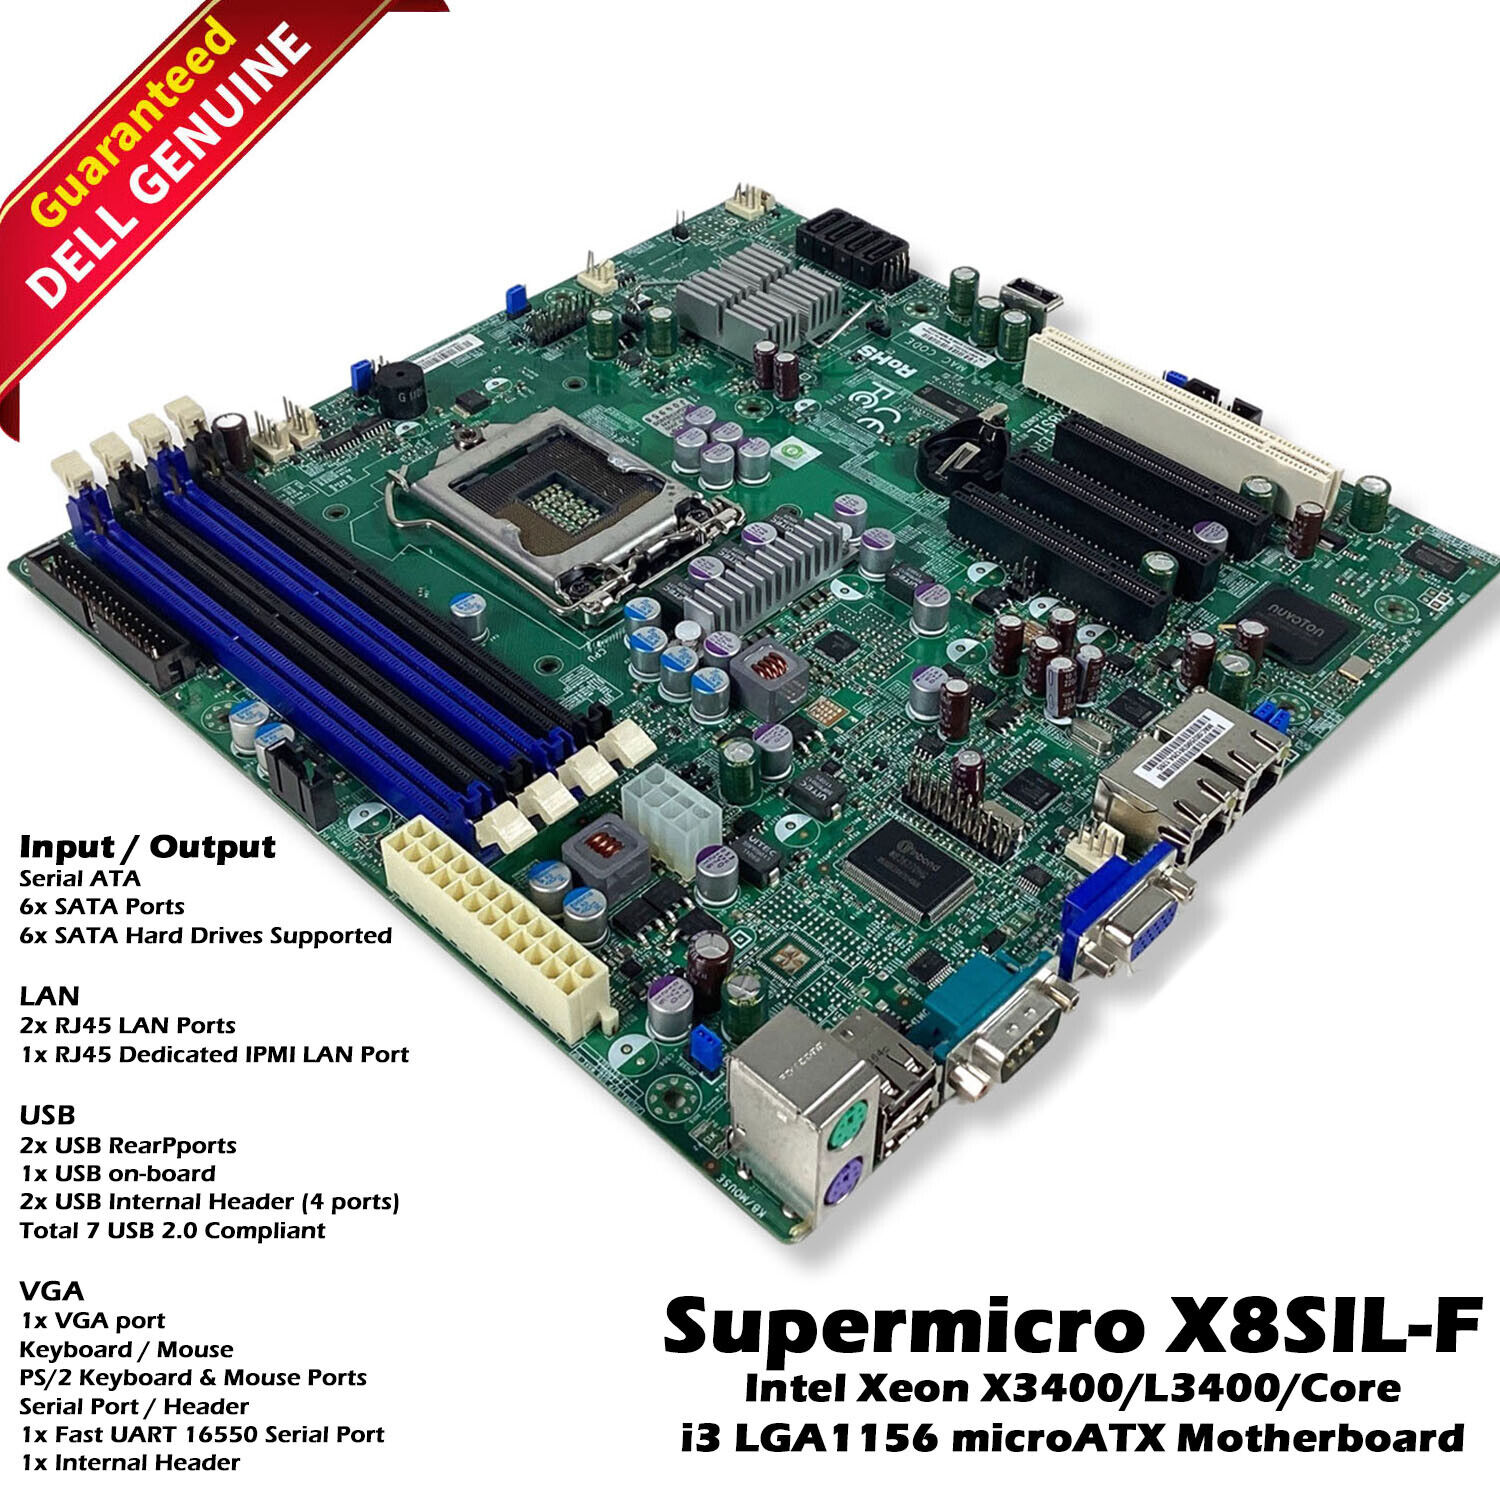 Super micro X8SIL-F LGA 1156 / SOCKET H DDR3 SDRAM Desktop Motherboard